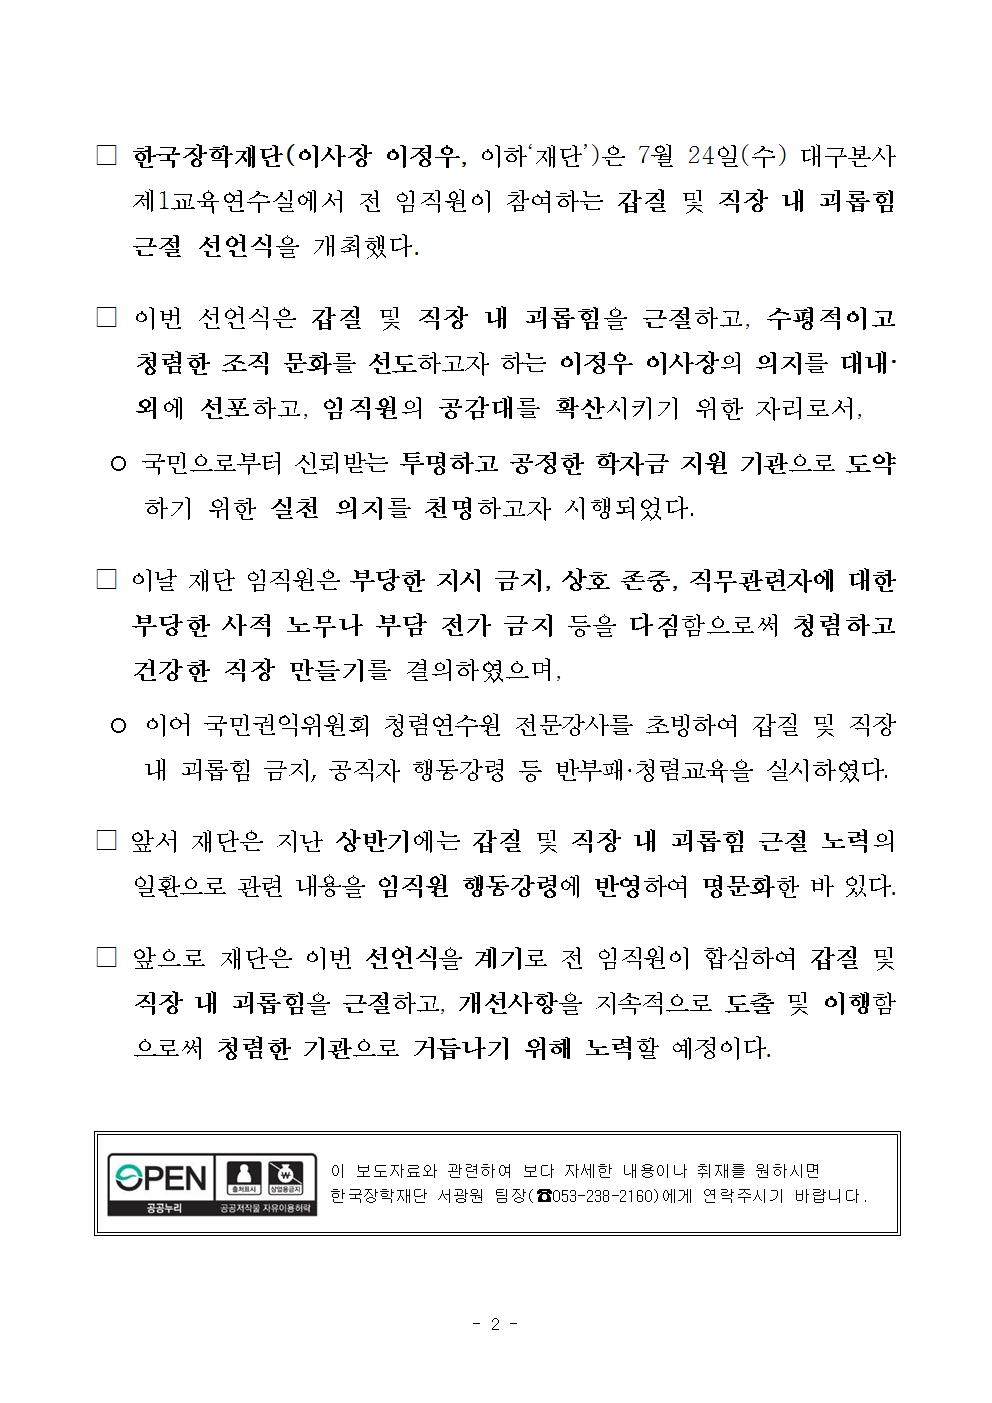 07-24(수)[보도자료] 한국장학재단, 반부패 선언식002.jpg